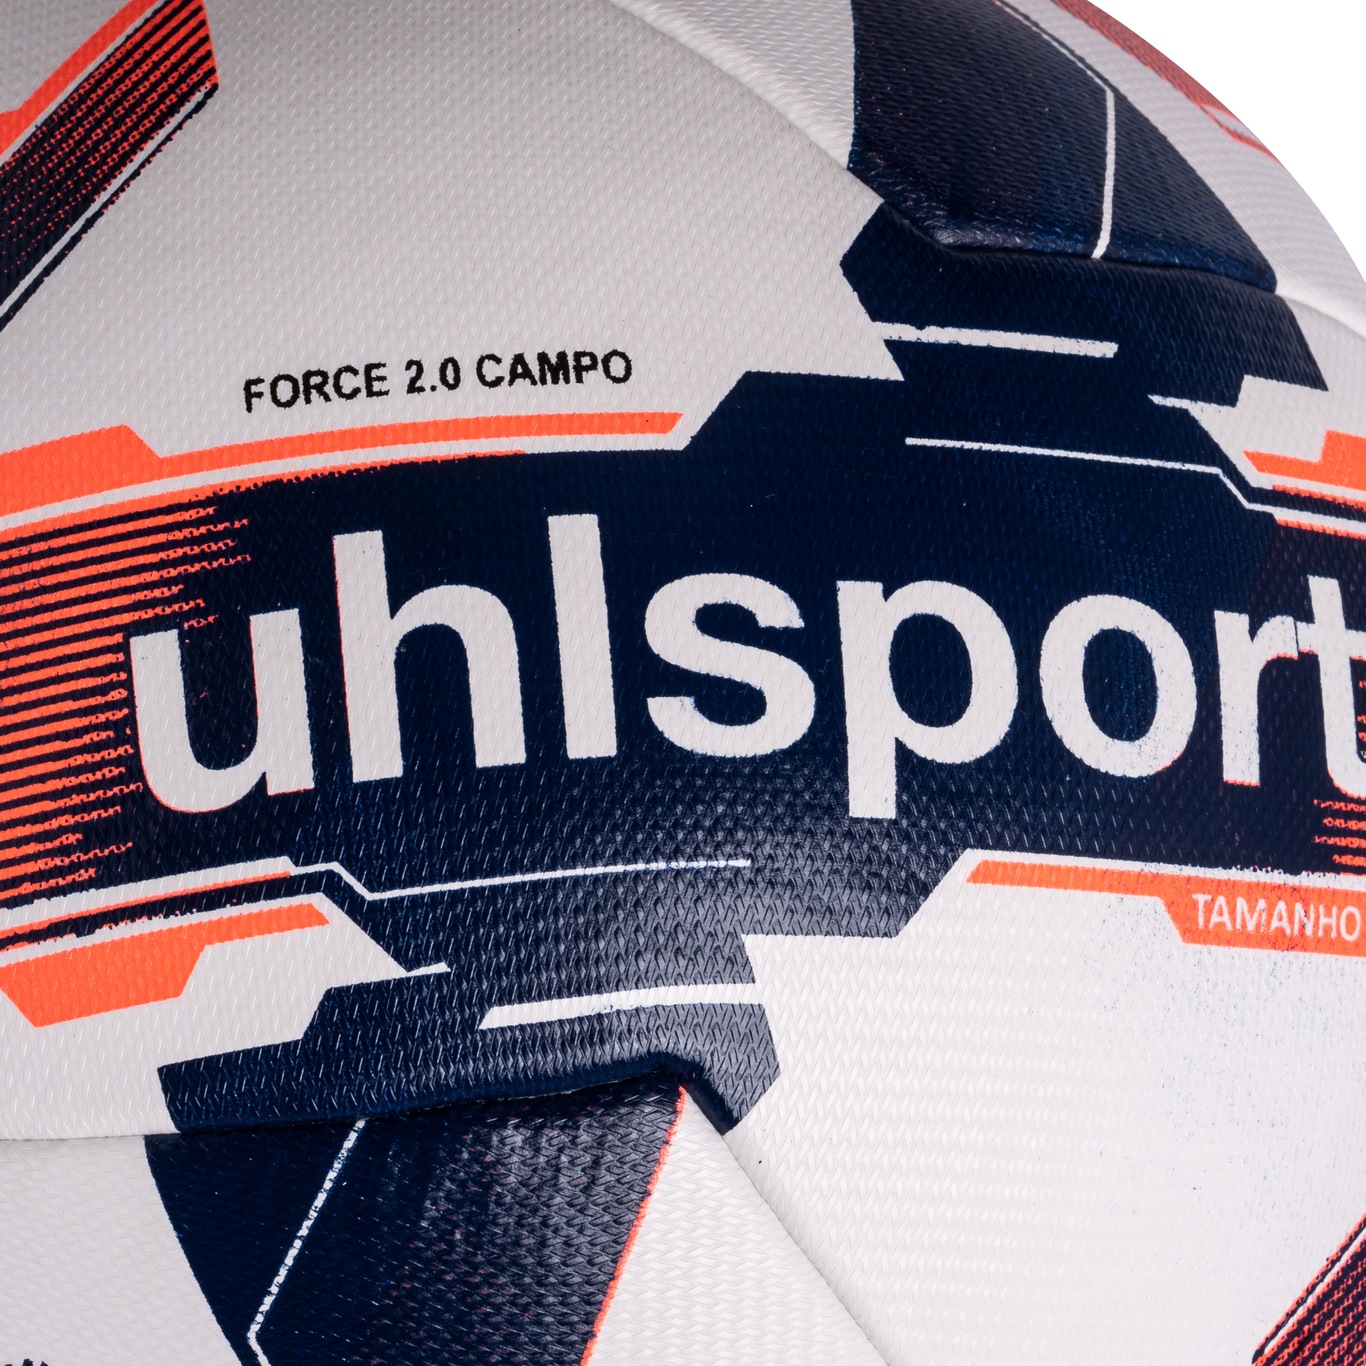 Bola de Futebol de Campo Uhlsport Force 2.0 - Foto 4